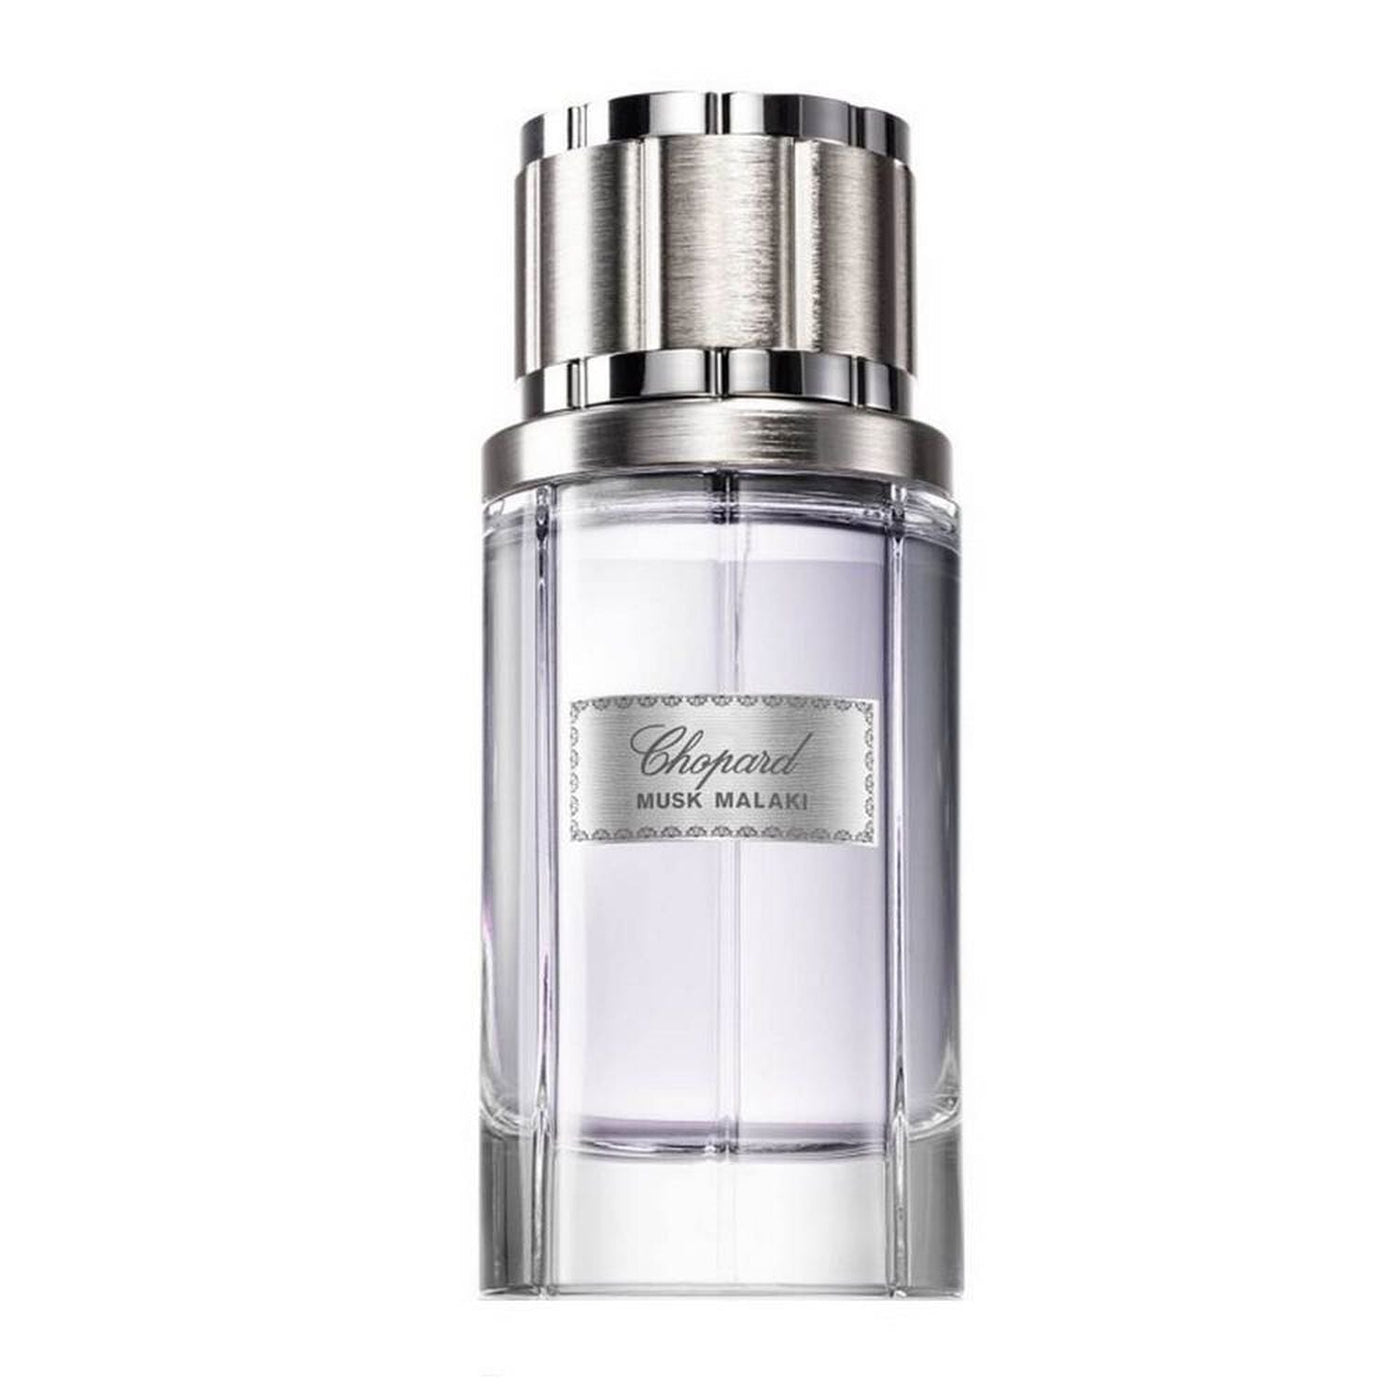 Chopard Musk Malaki For Men And Women Eau De Parfum 80Ml